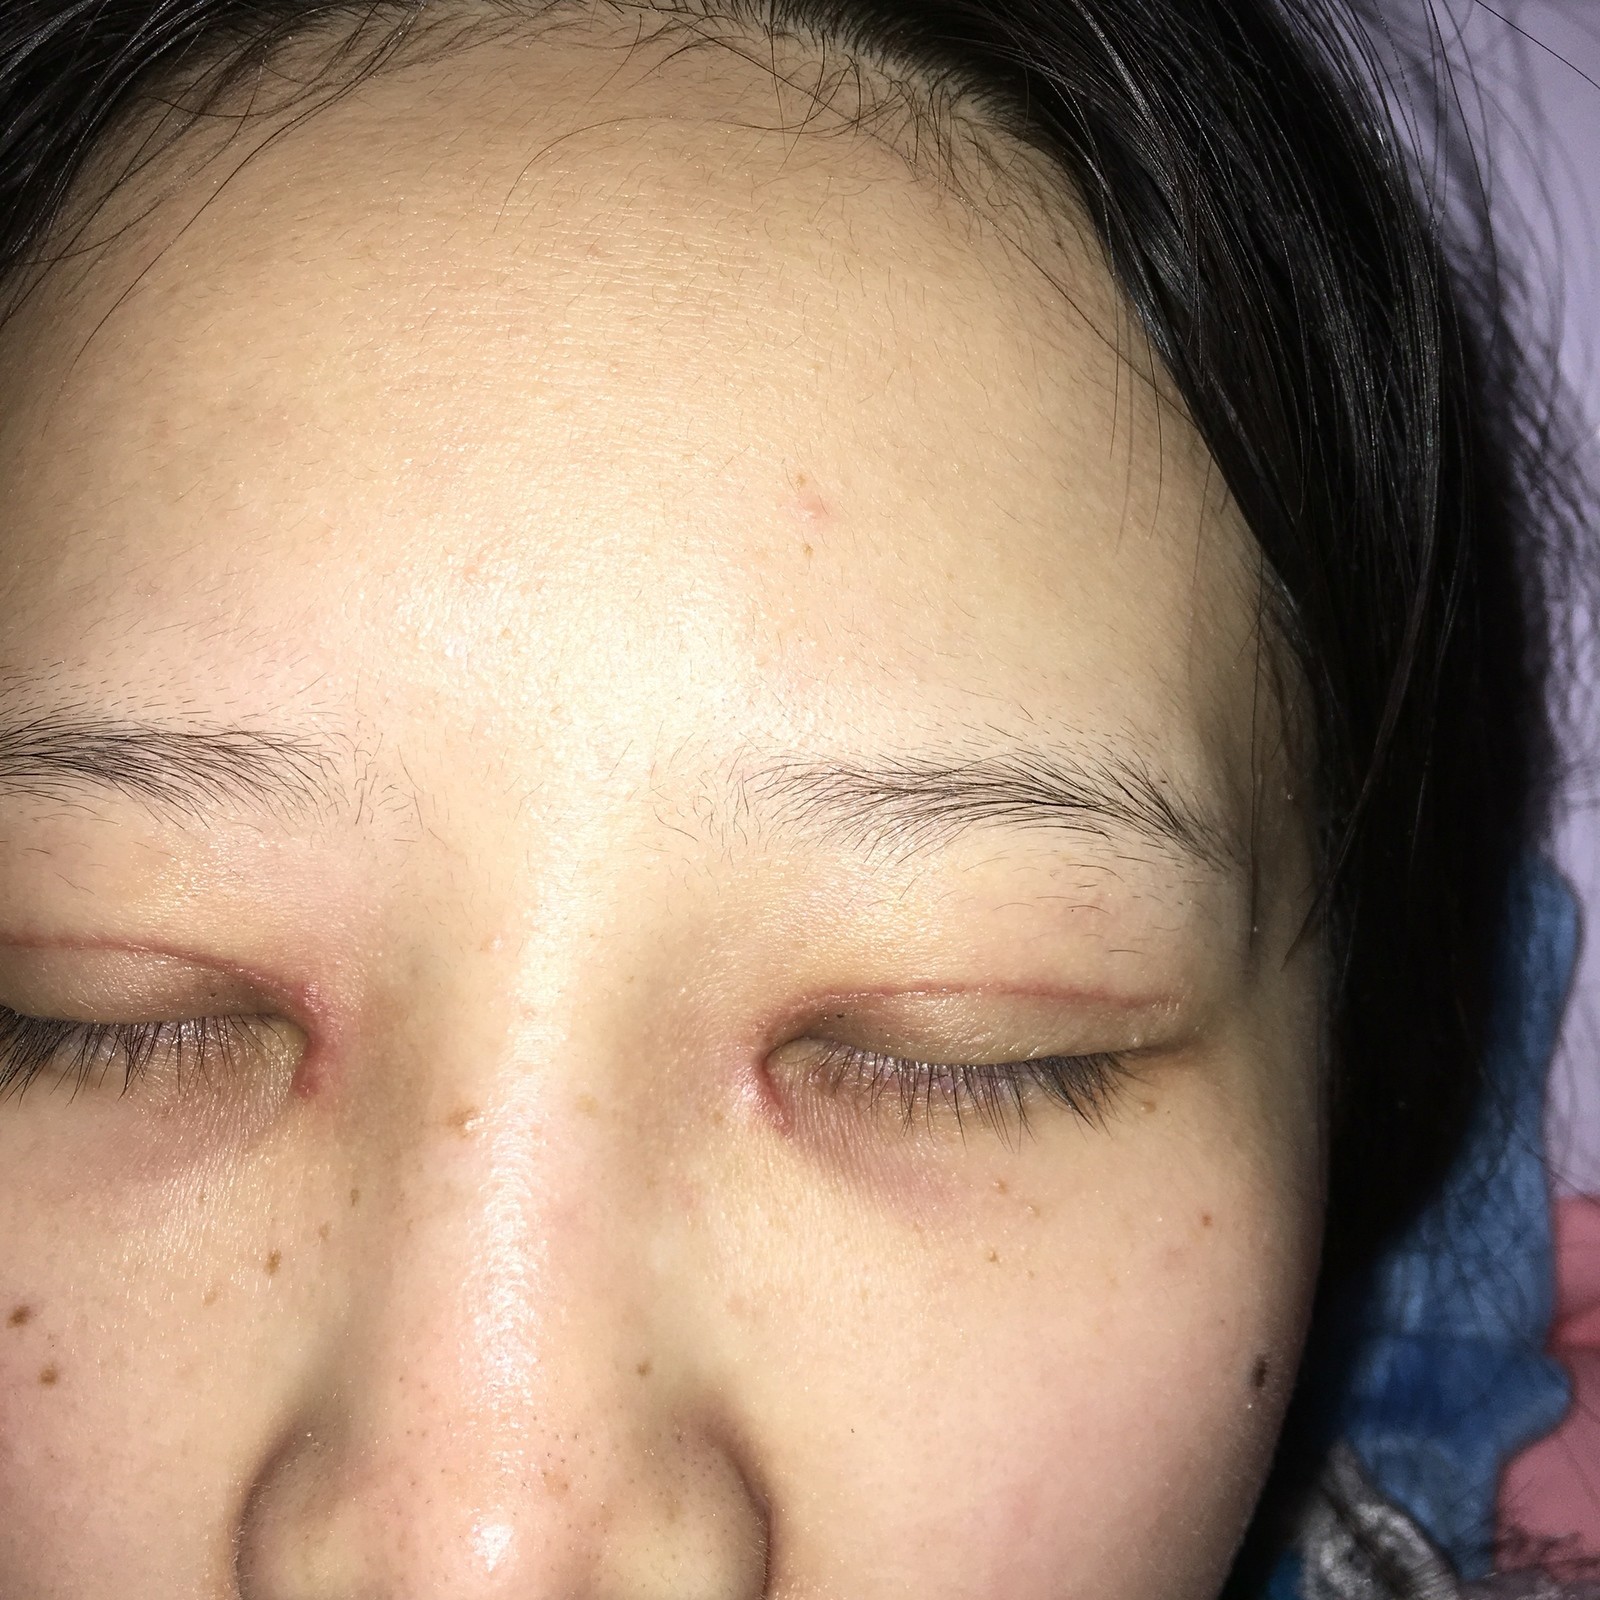 双眼皮全切加开内眼角一个月了,眼角处疤痕明显怎么办?是不是增生了?